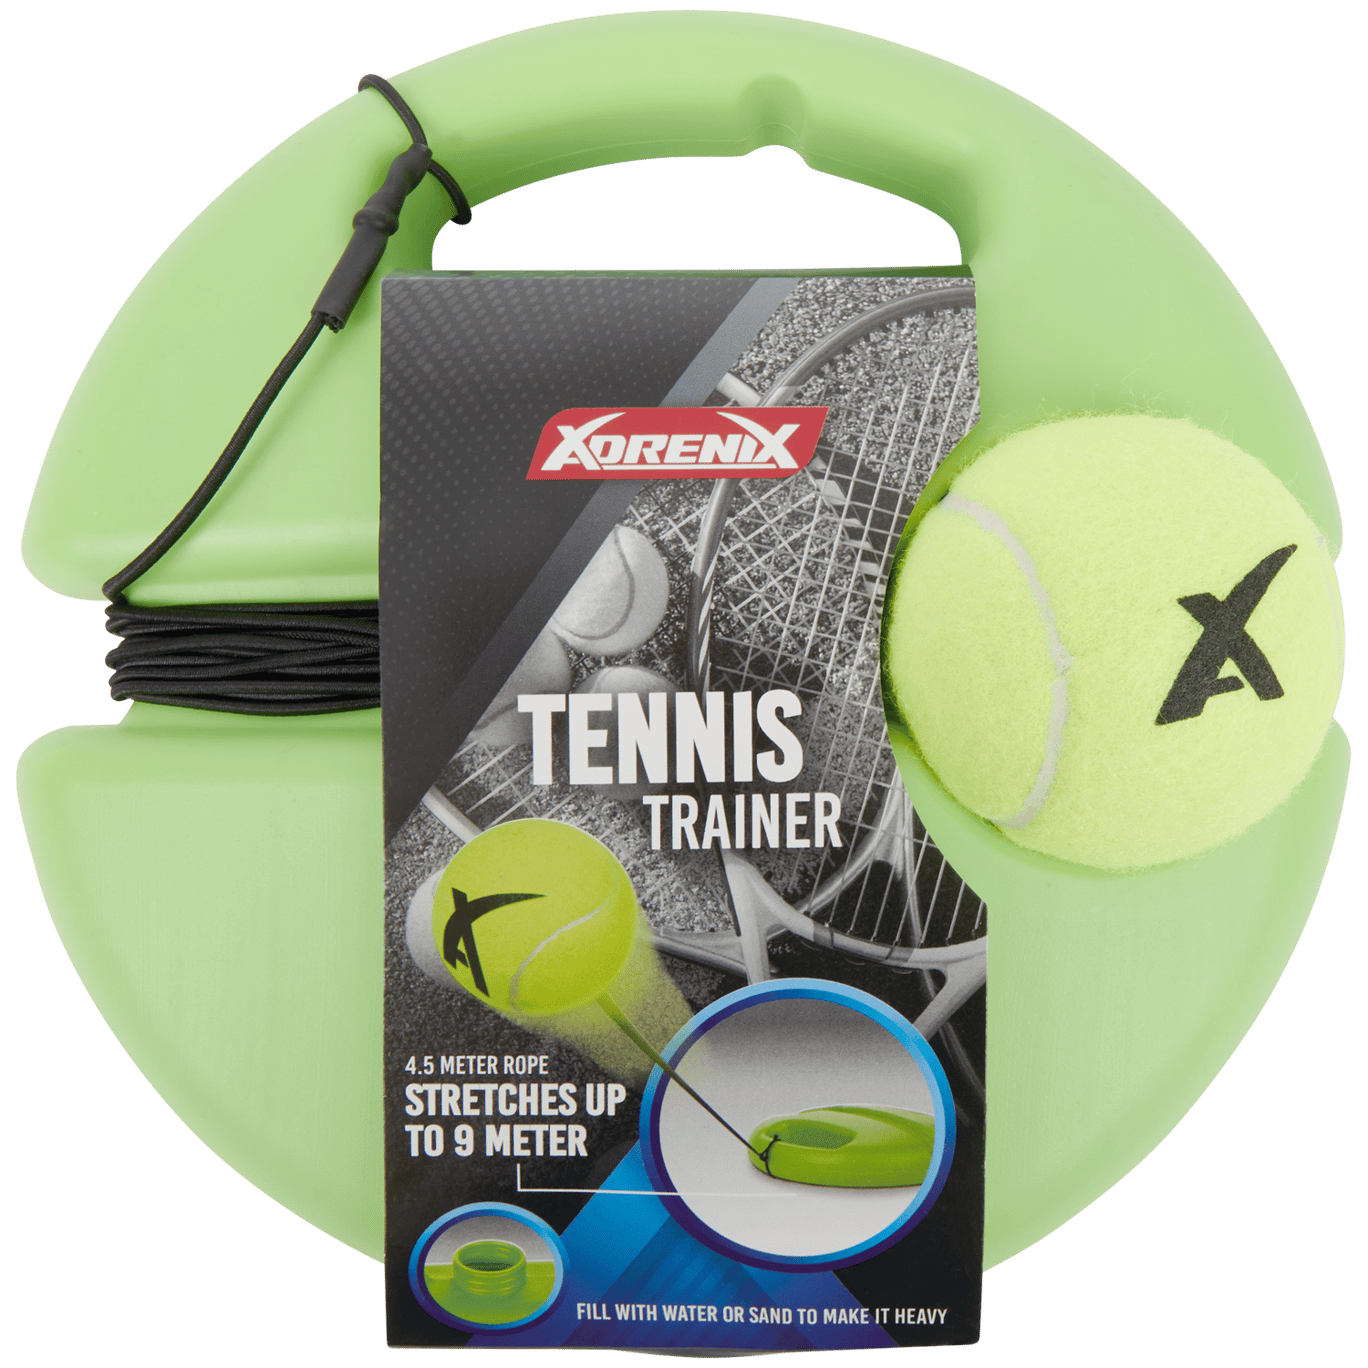 Entrenador de tenis XdreniX